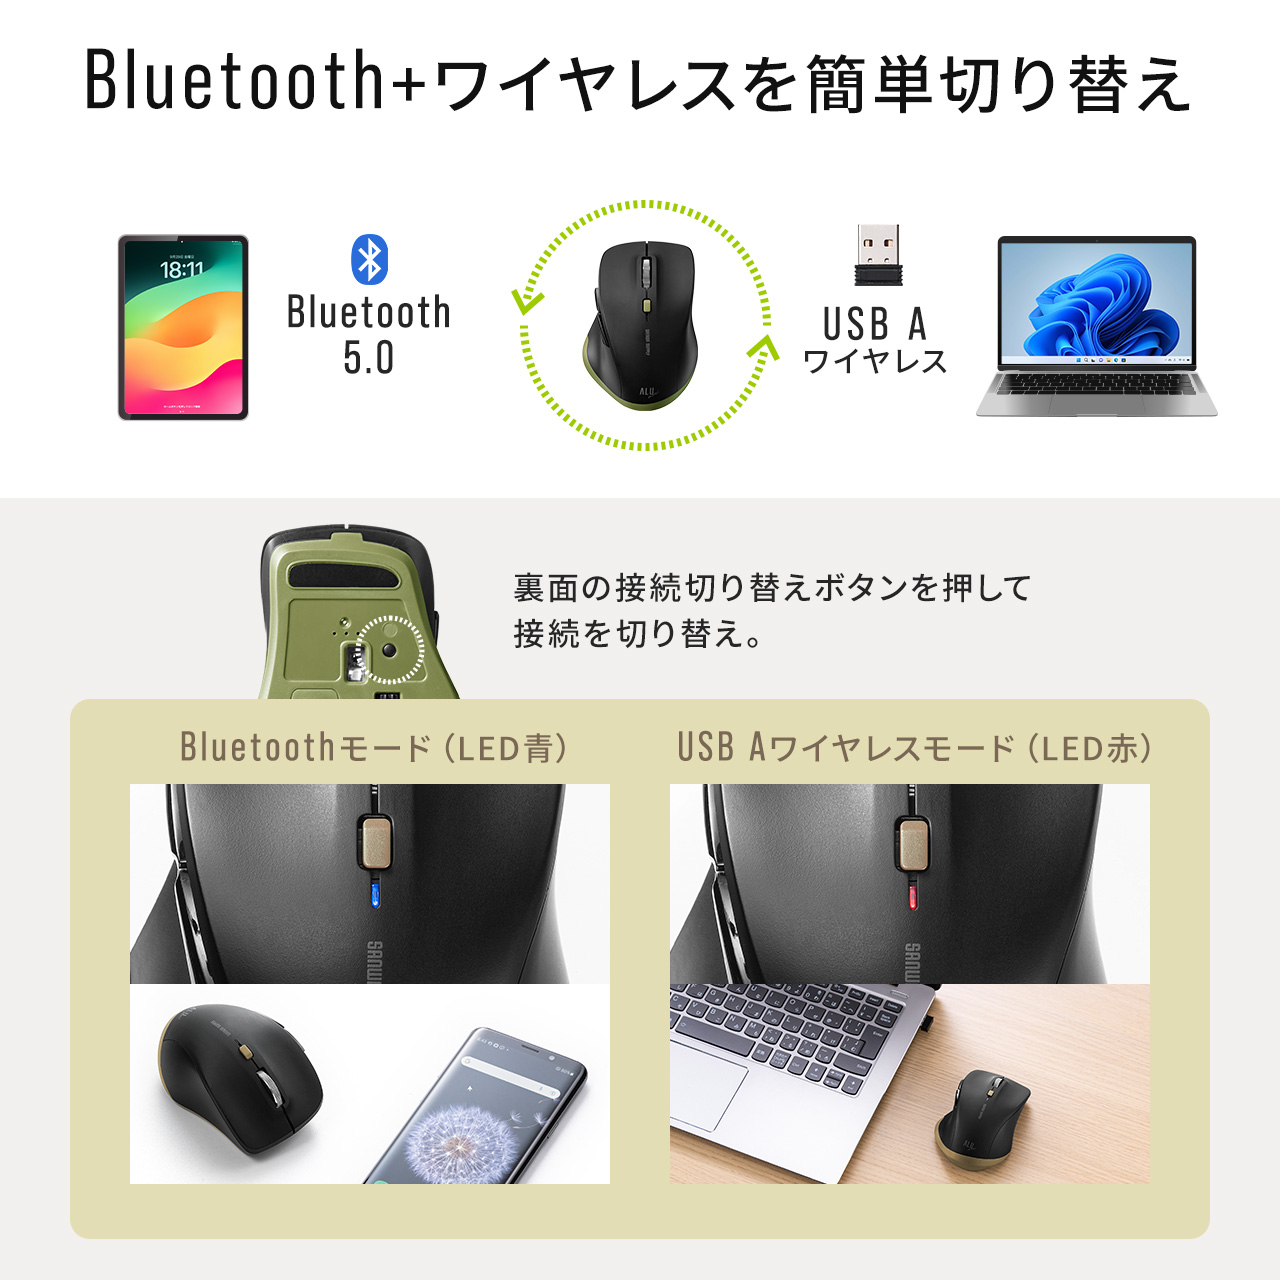 ワイヤレスマウス Bluetooth & USB A レシーバー 小型 静音 5ボタン 戻る進む アルミホイール 無線 2.4GHz ALUmini カーキ 400-MAWBT159BKK